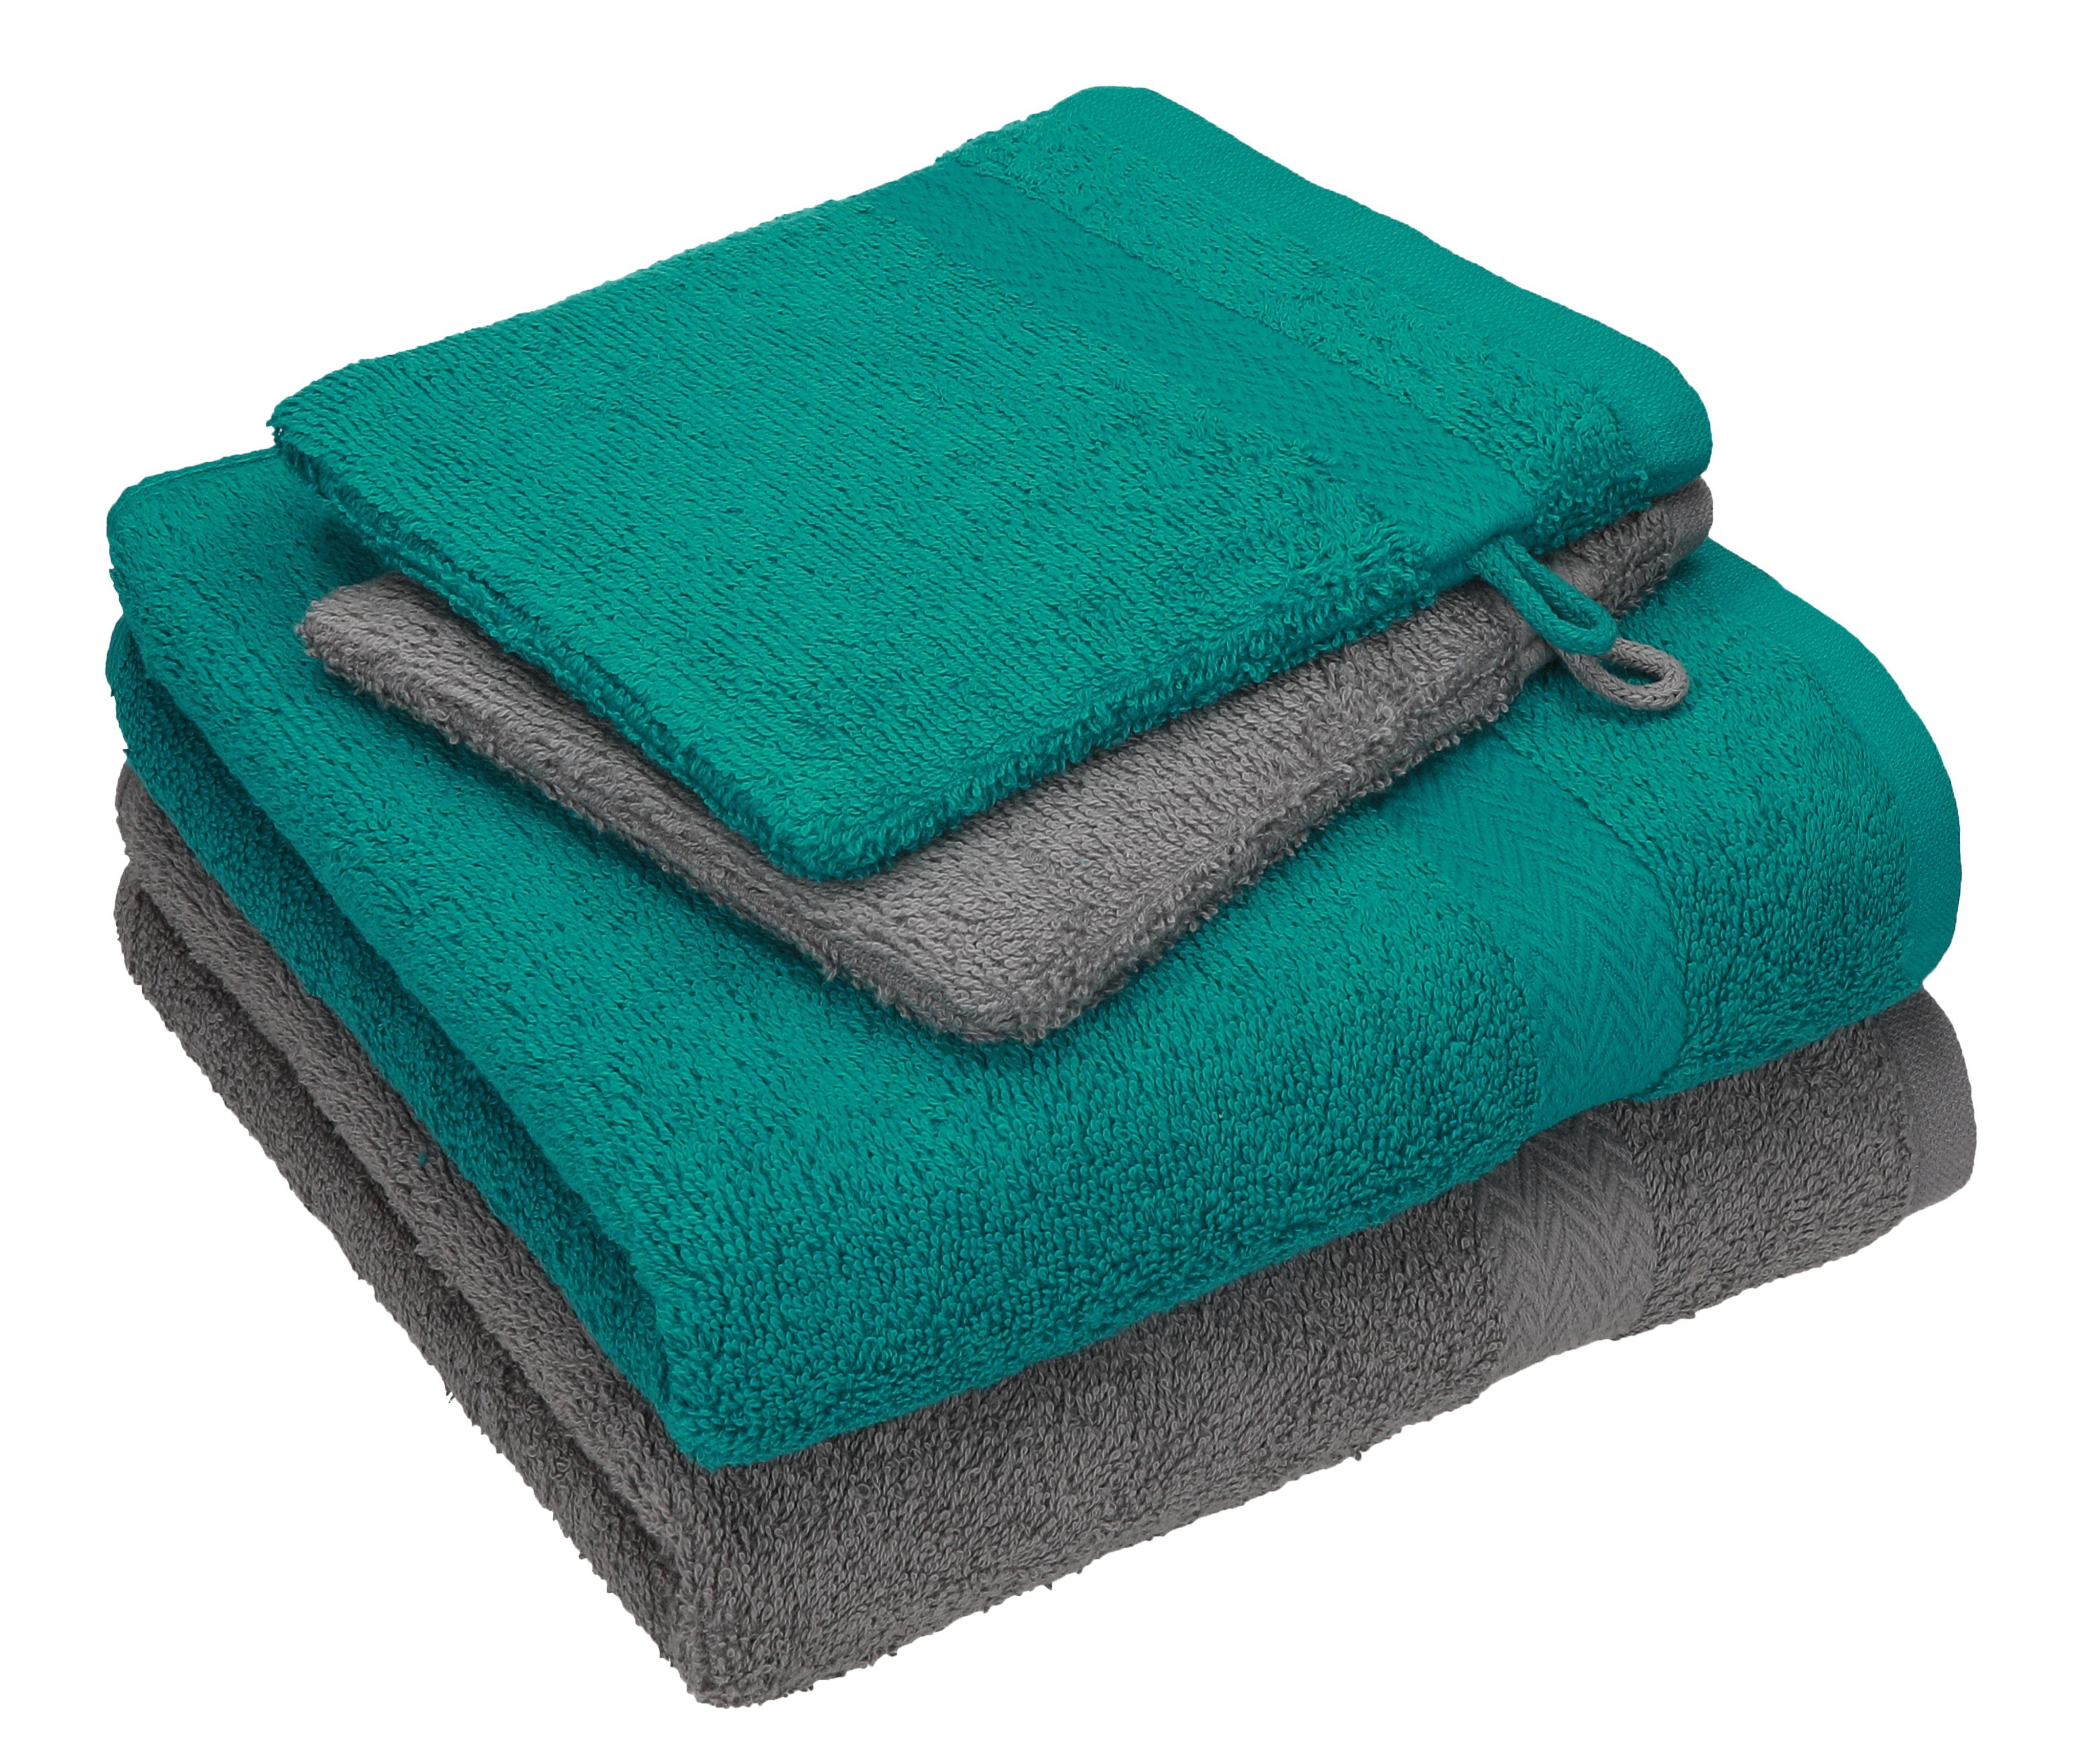 Betz Handtuch Set 4 TLG. Handtuch Set Happy Pack 100% Baumwolle 2 Handtücher 2 Waschhandschuhe, 100% Baumwolle anthrazit grau - smaragdgrün